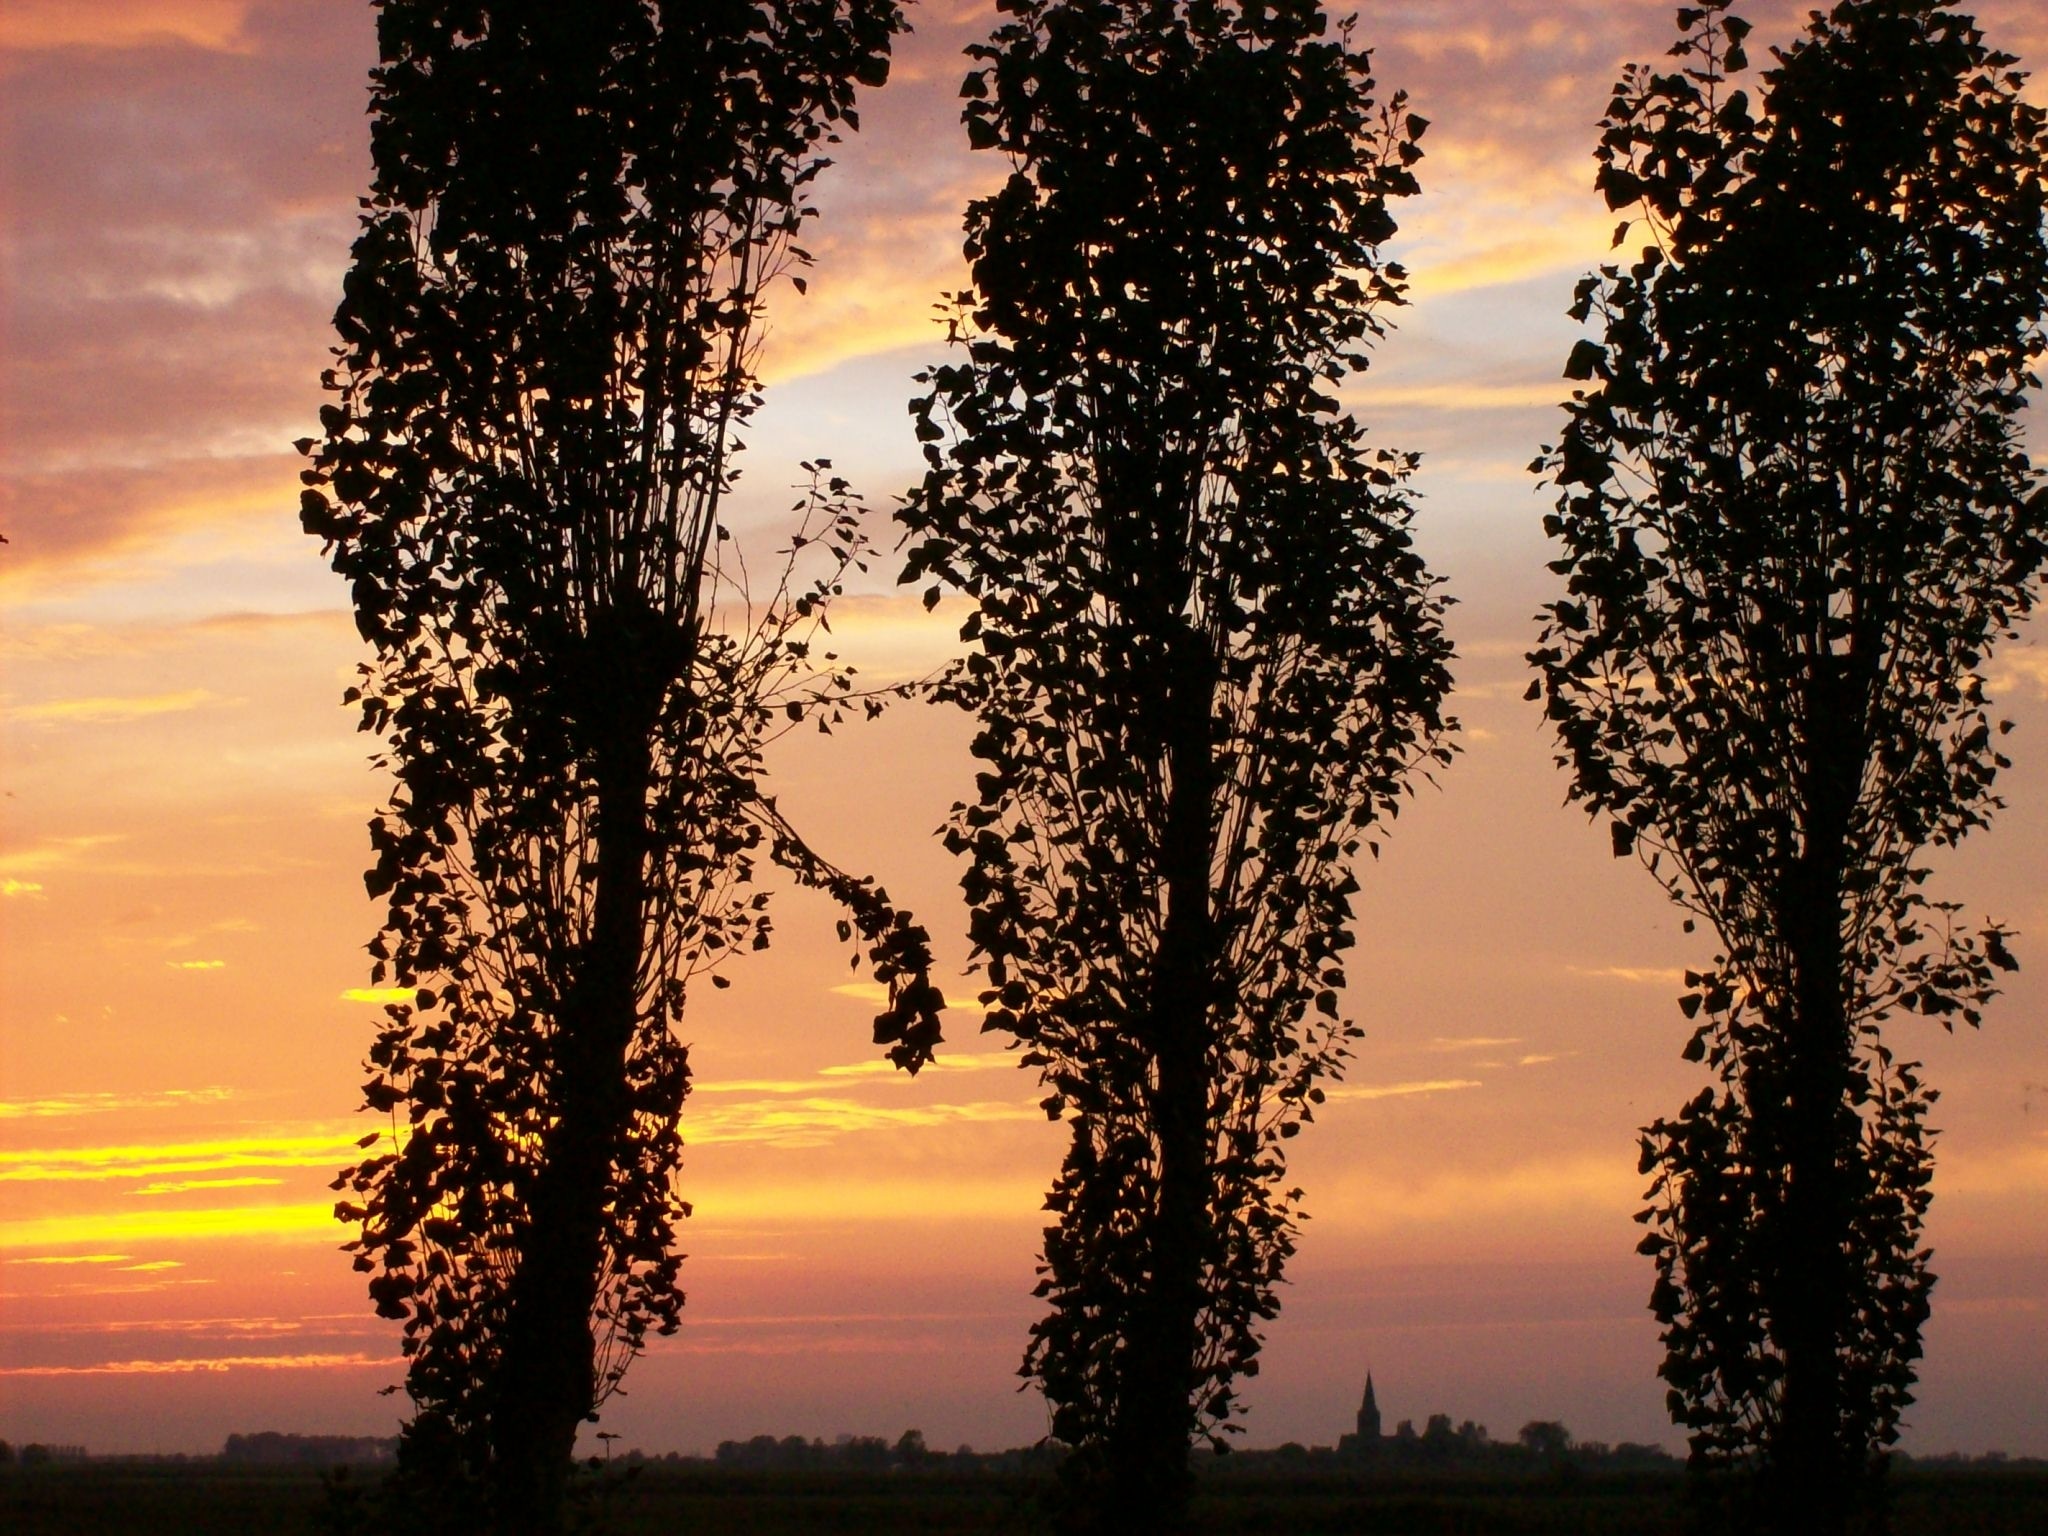 Sunset, Houtave, Belgium, Dusk, Trees, sunset, tree